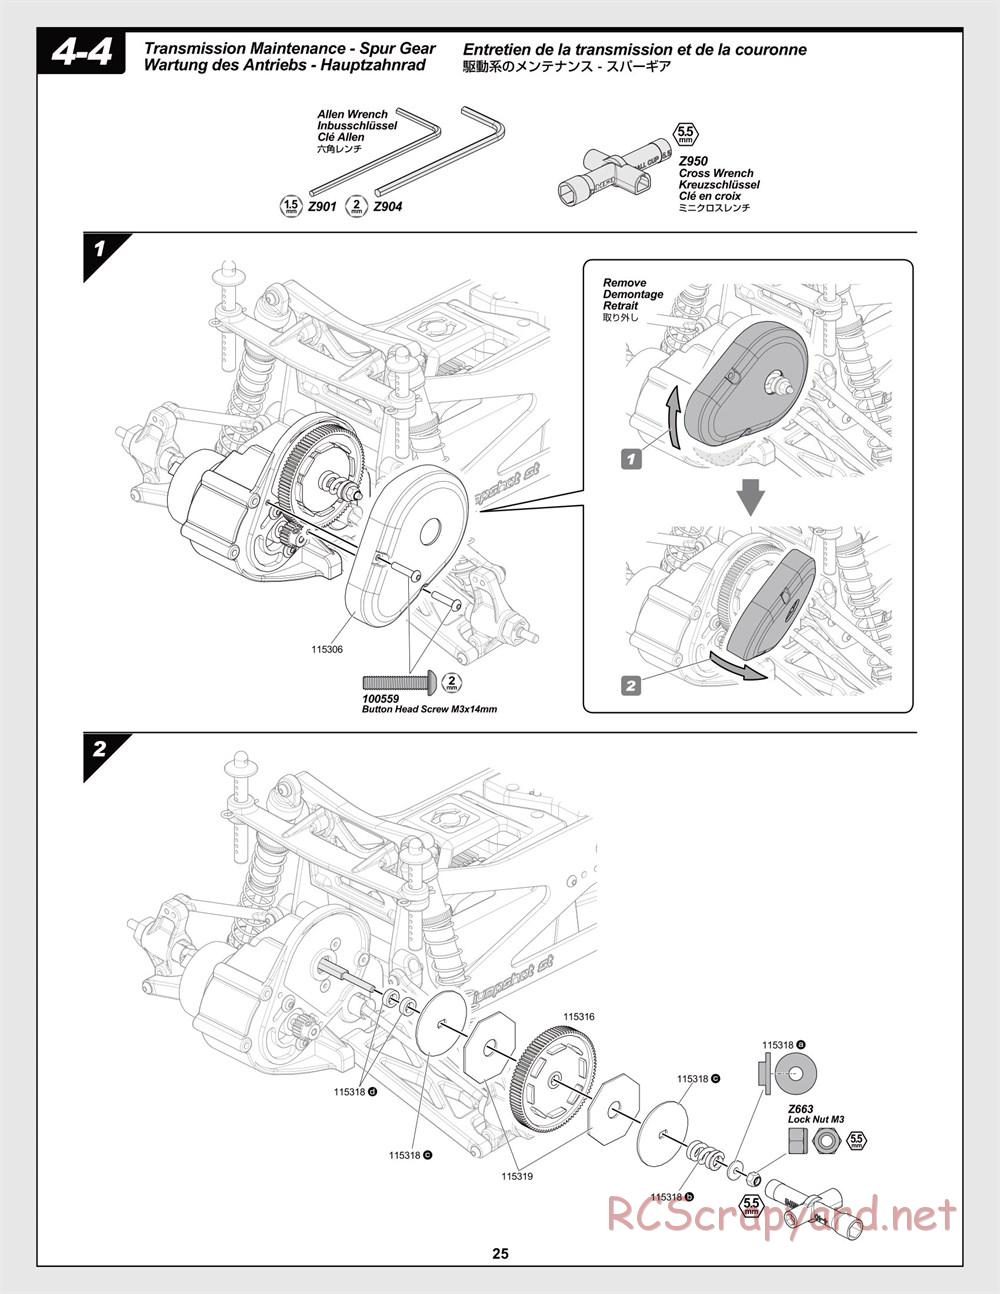 HPI - Jumpshot MT V2 - Manual - Page 25